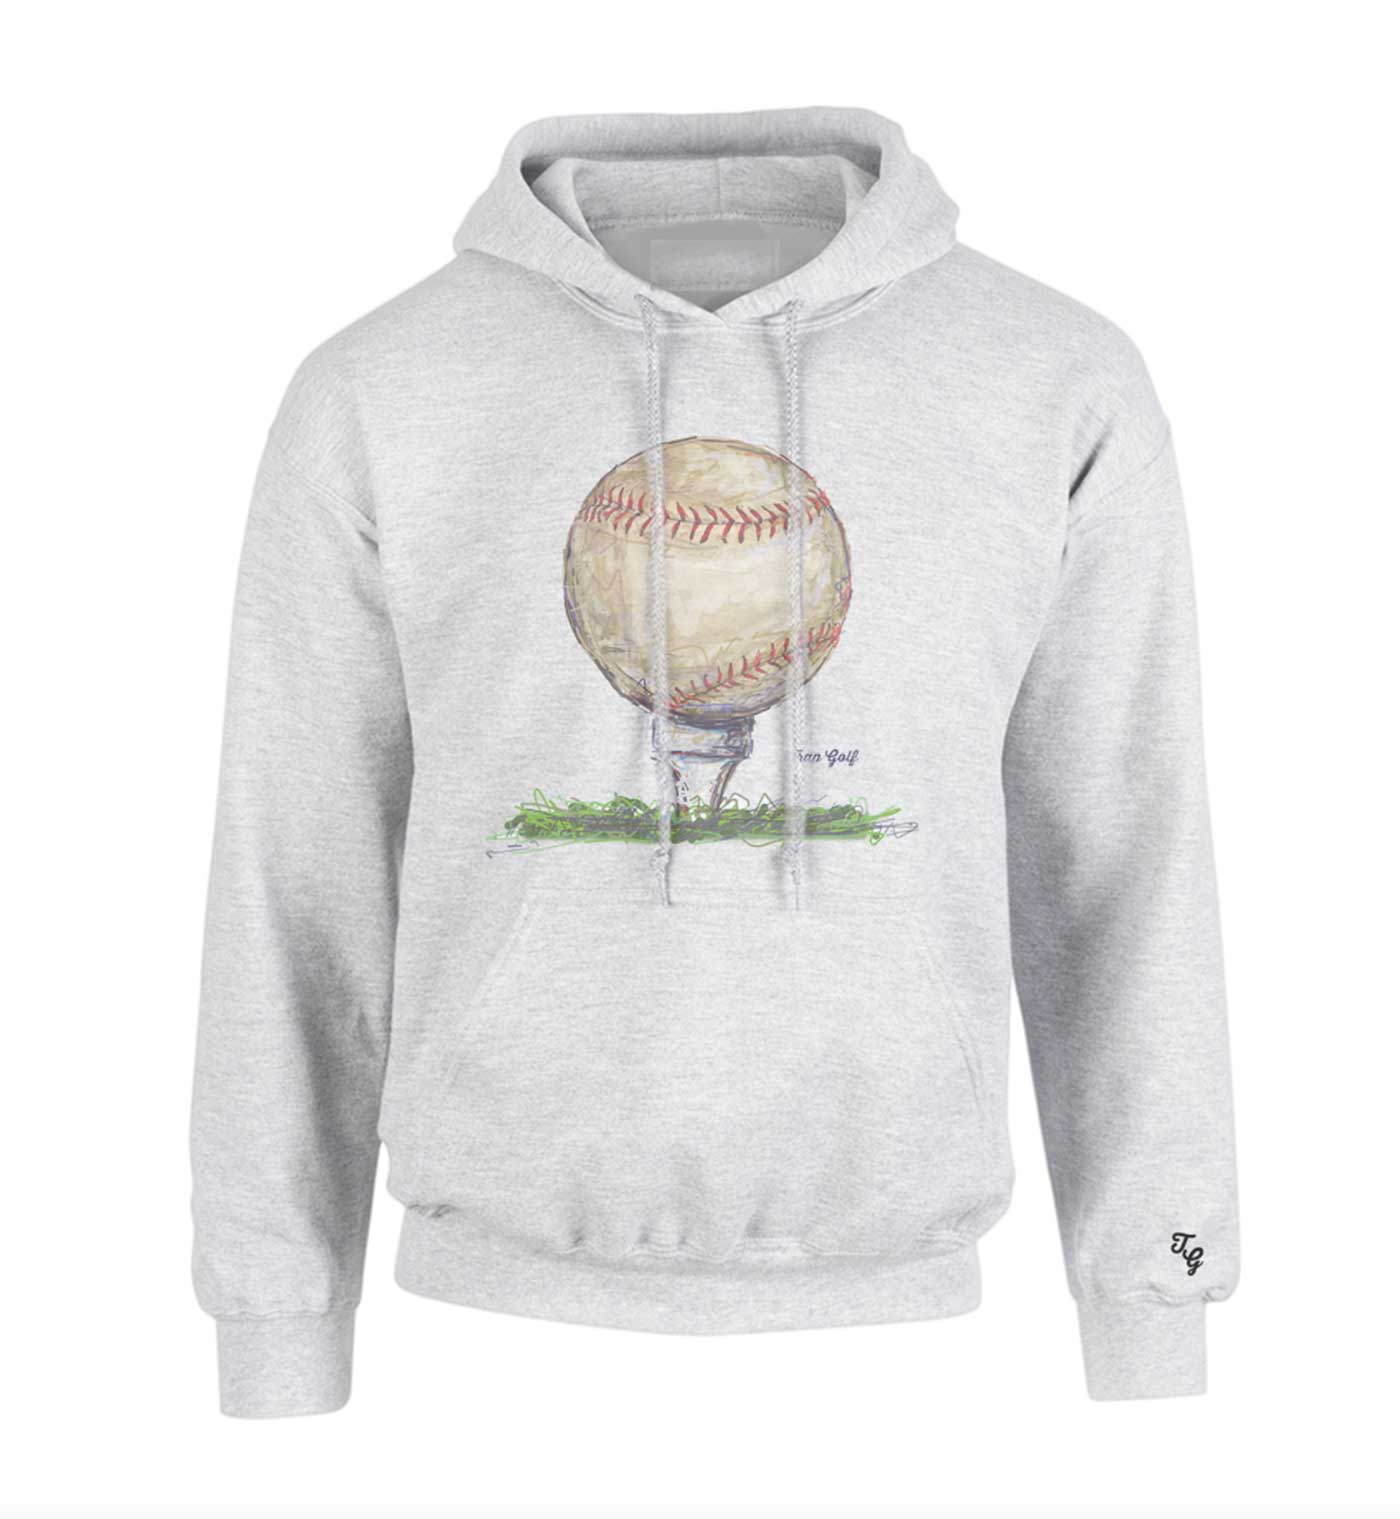 A golfy baseball hoodie